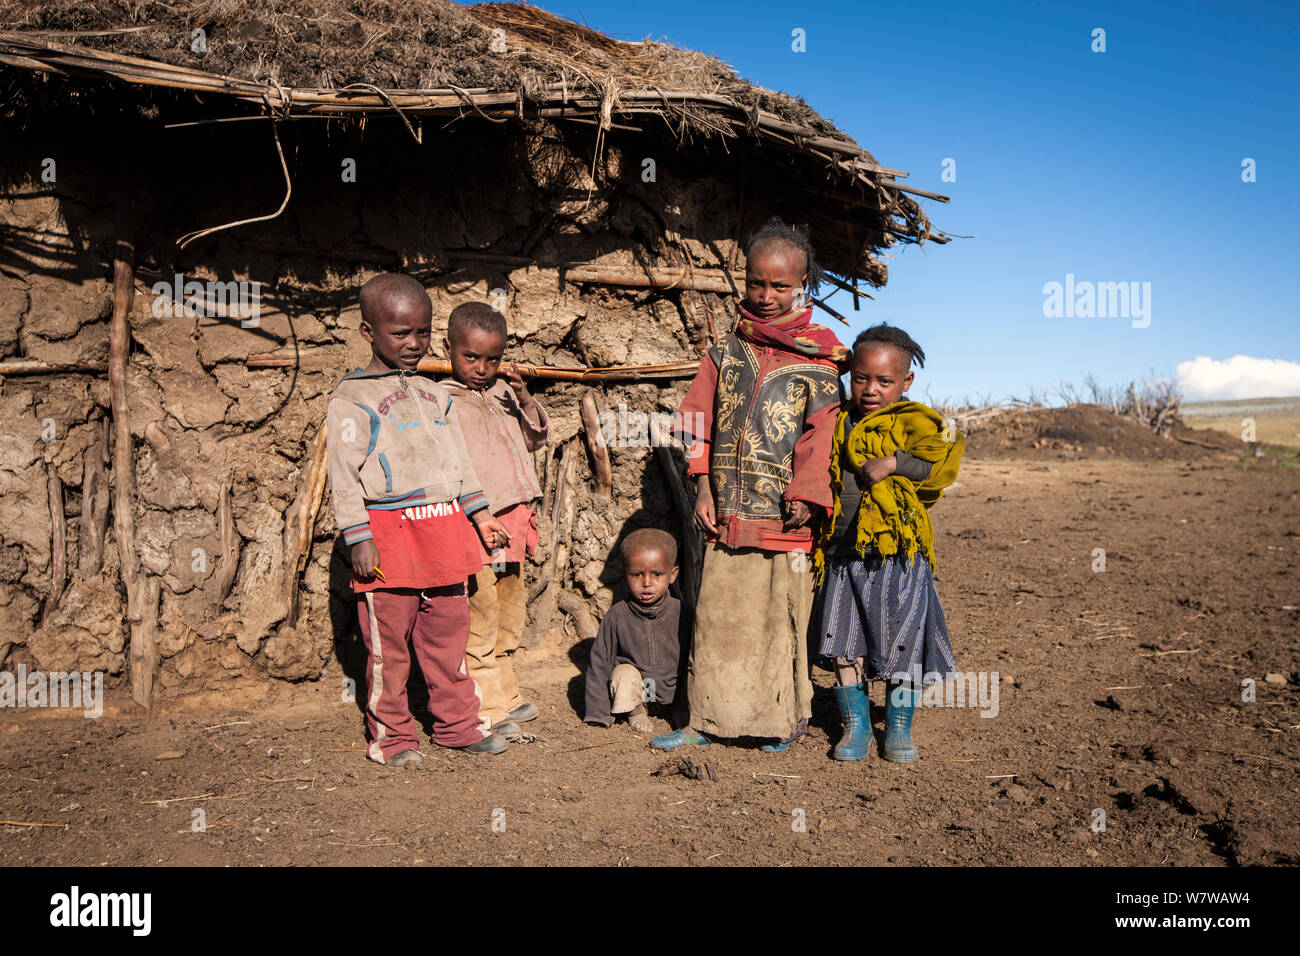 Los niños etíopes, Rafu. El Parque Nacional de las montañas Bale, Etiopía, diciembre de 2011. Foto de stock